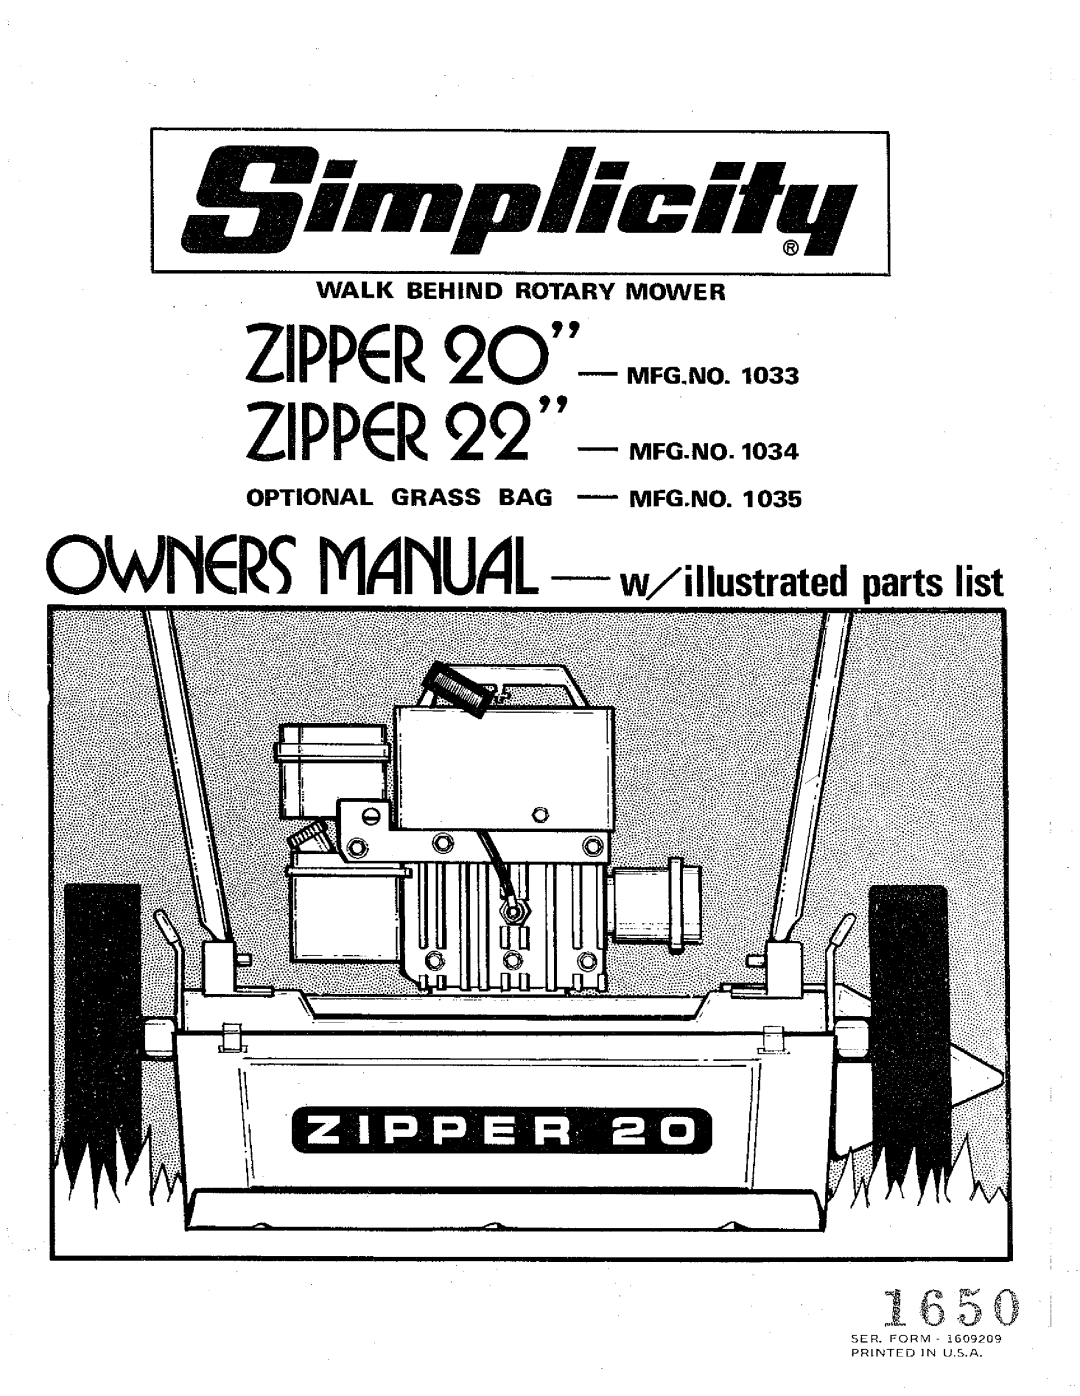 Simplicity 1035, 1033, 1034 manual 